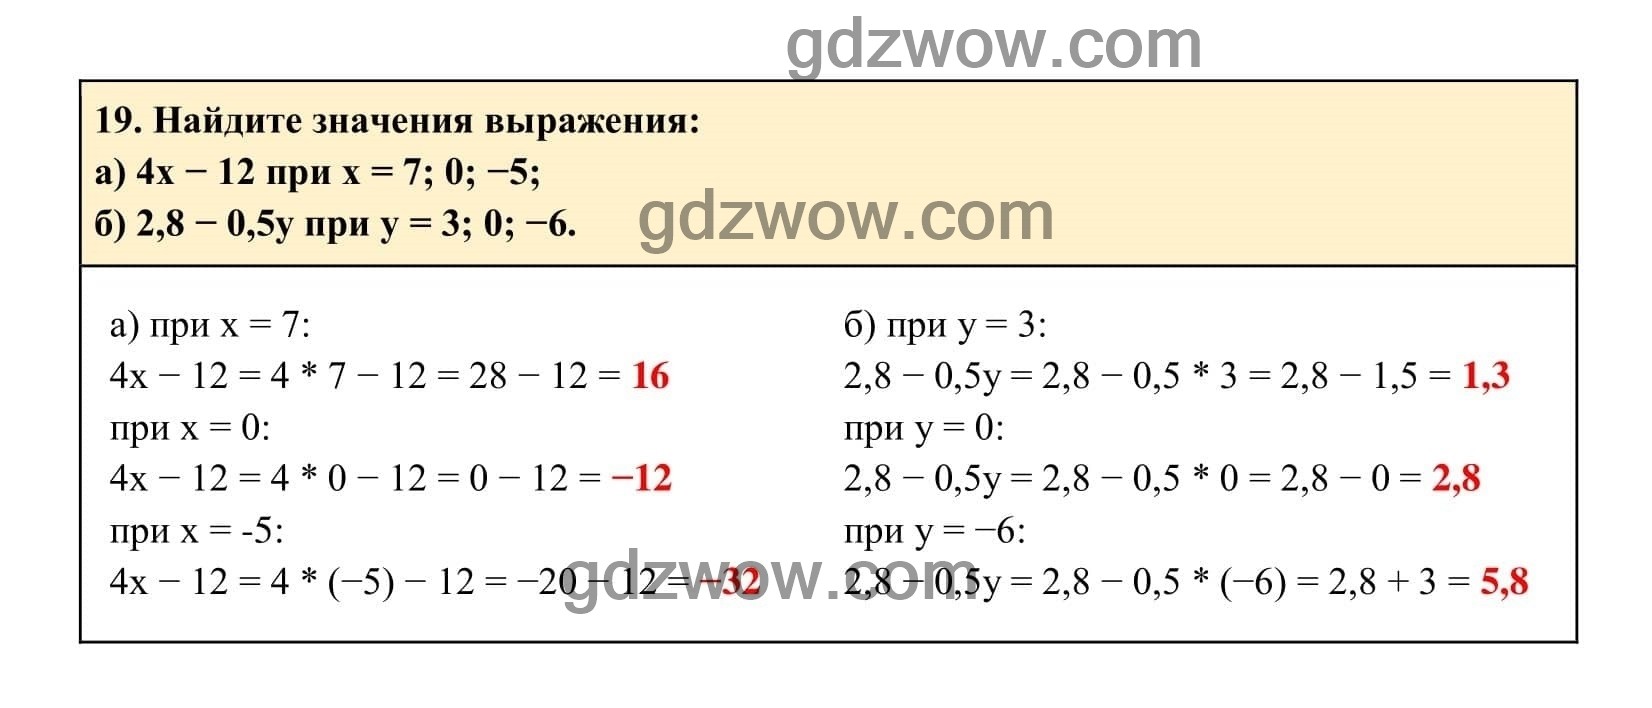 Упражнение 19 - ГДЗ по Алгебре 7 класс Учебник Макарычев (решебник) - GDZwow